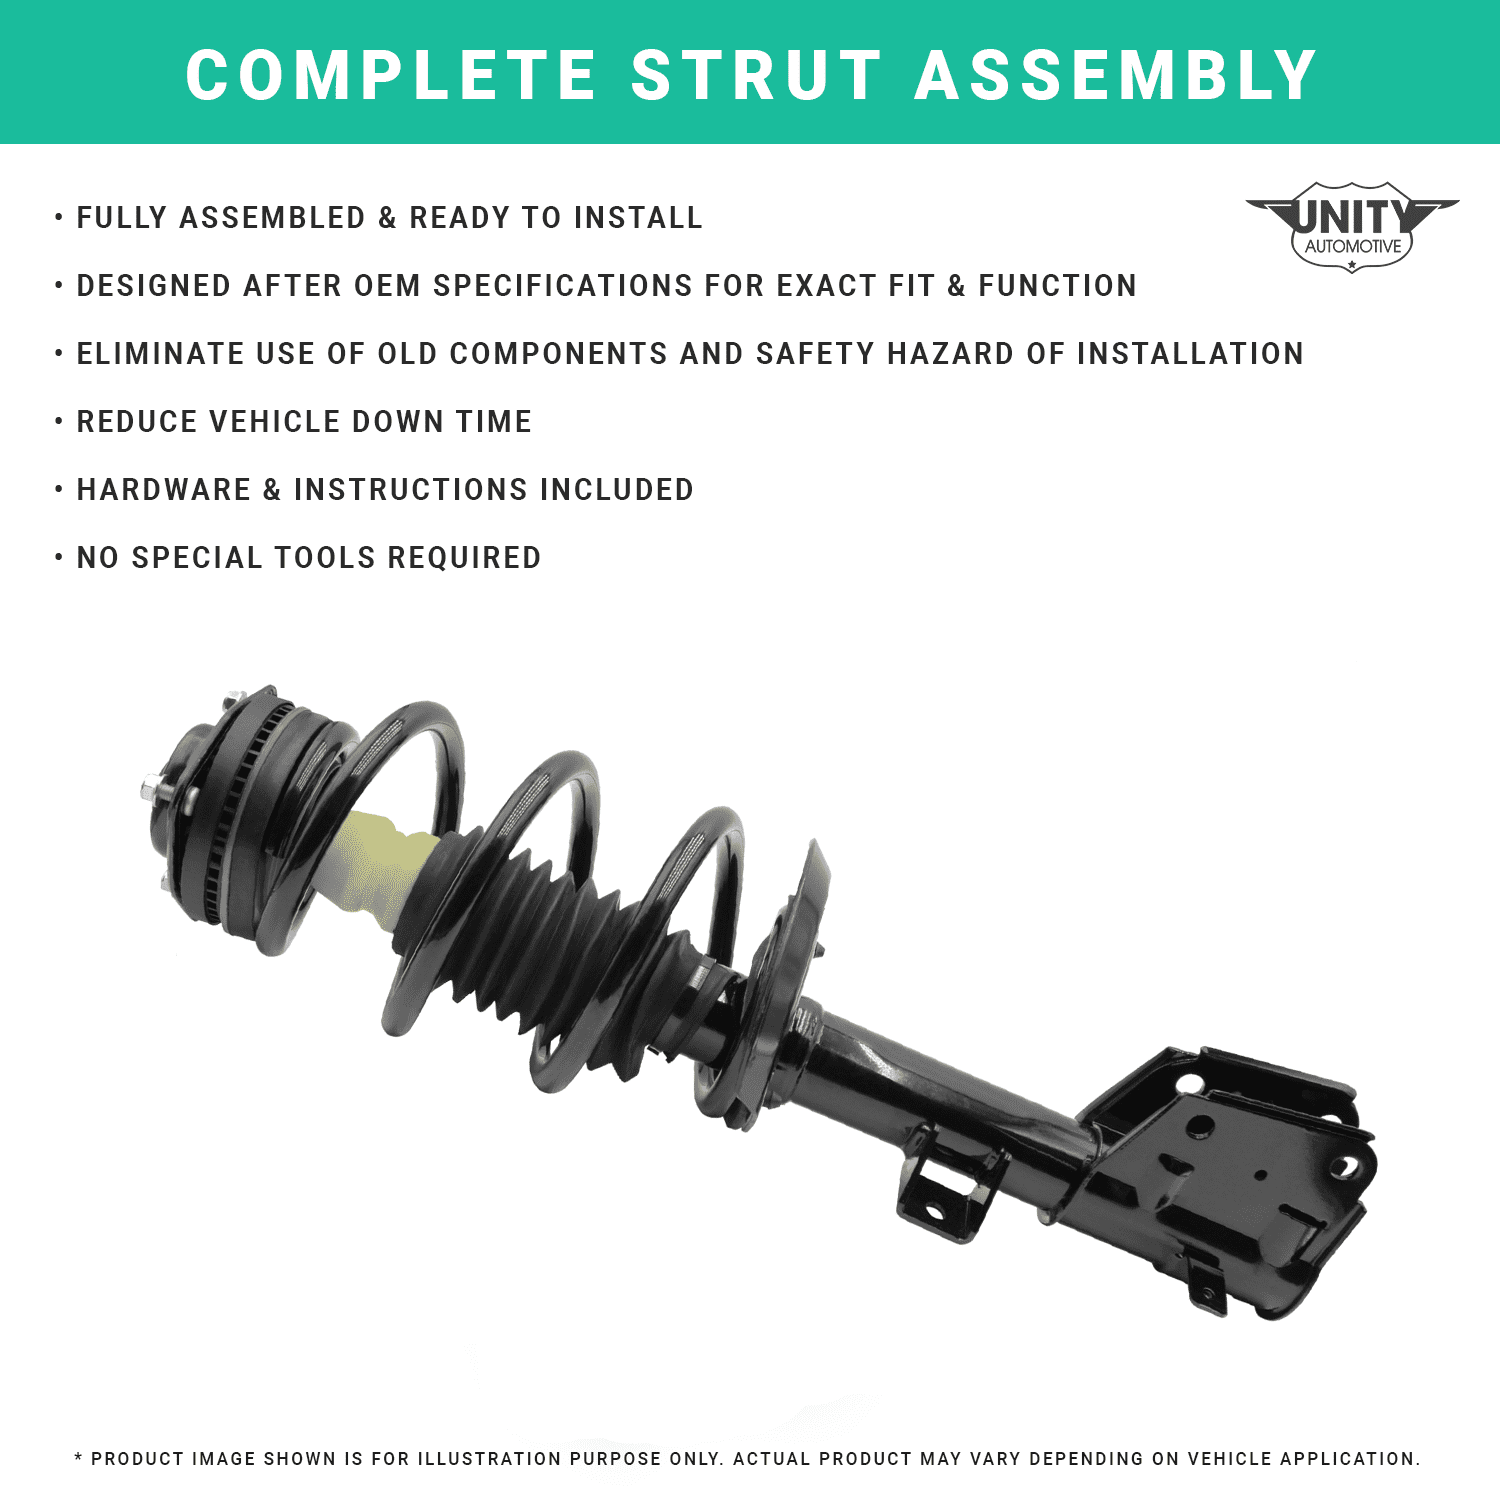 Unity Automotive Front Complete Strut Assembly Kit Fits 2003-2009 Lexus  GX470, 2-11565-11566-001